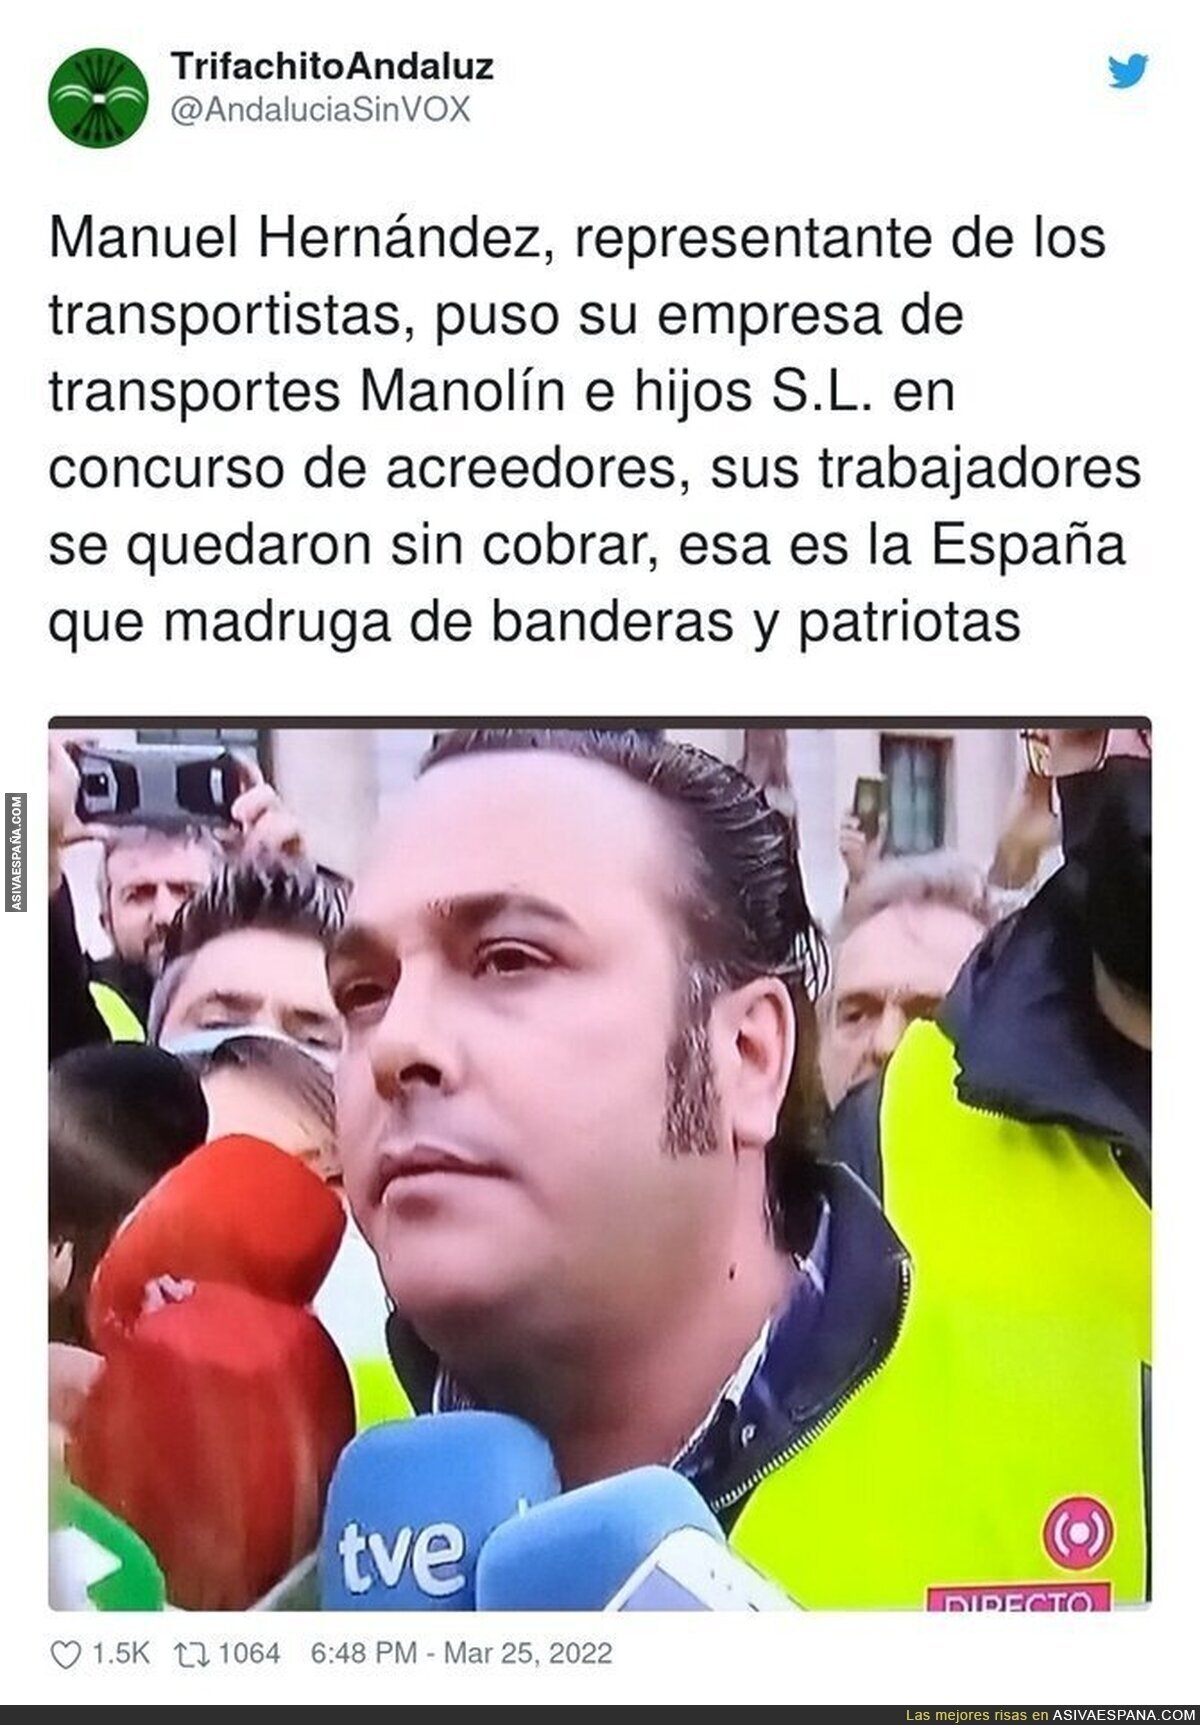 El señor que está creando el caos en España con los transportistas